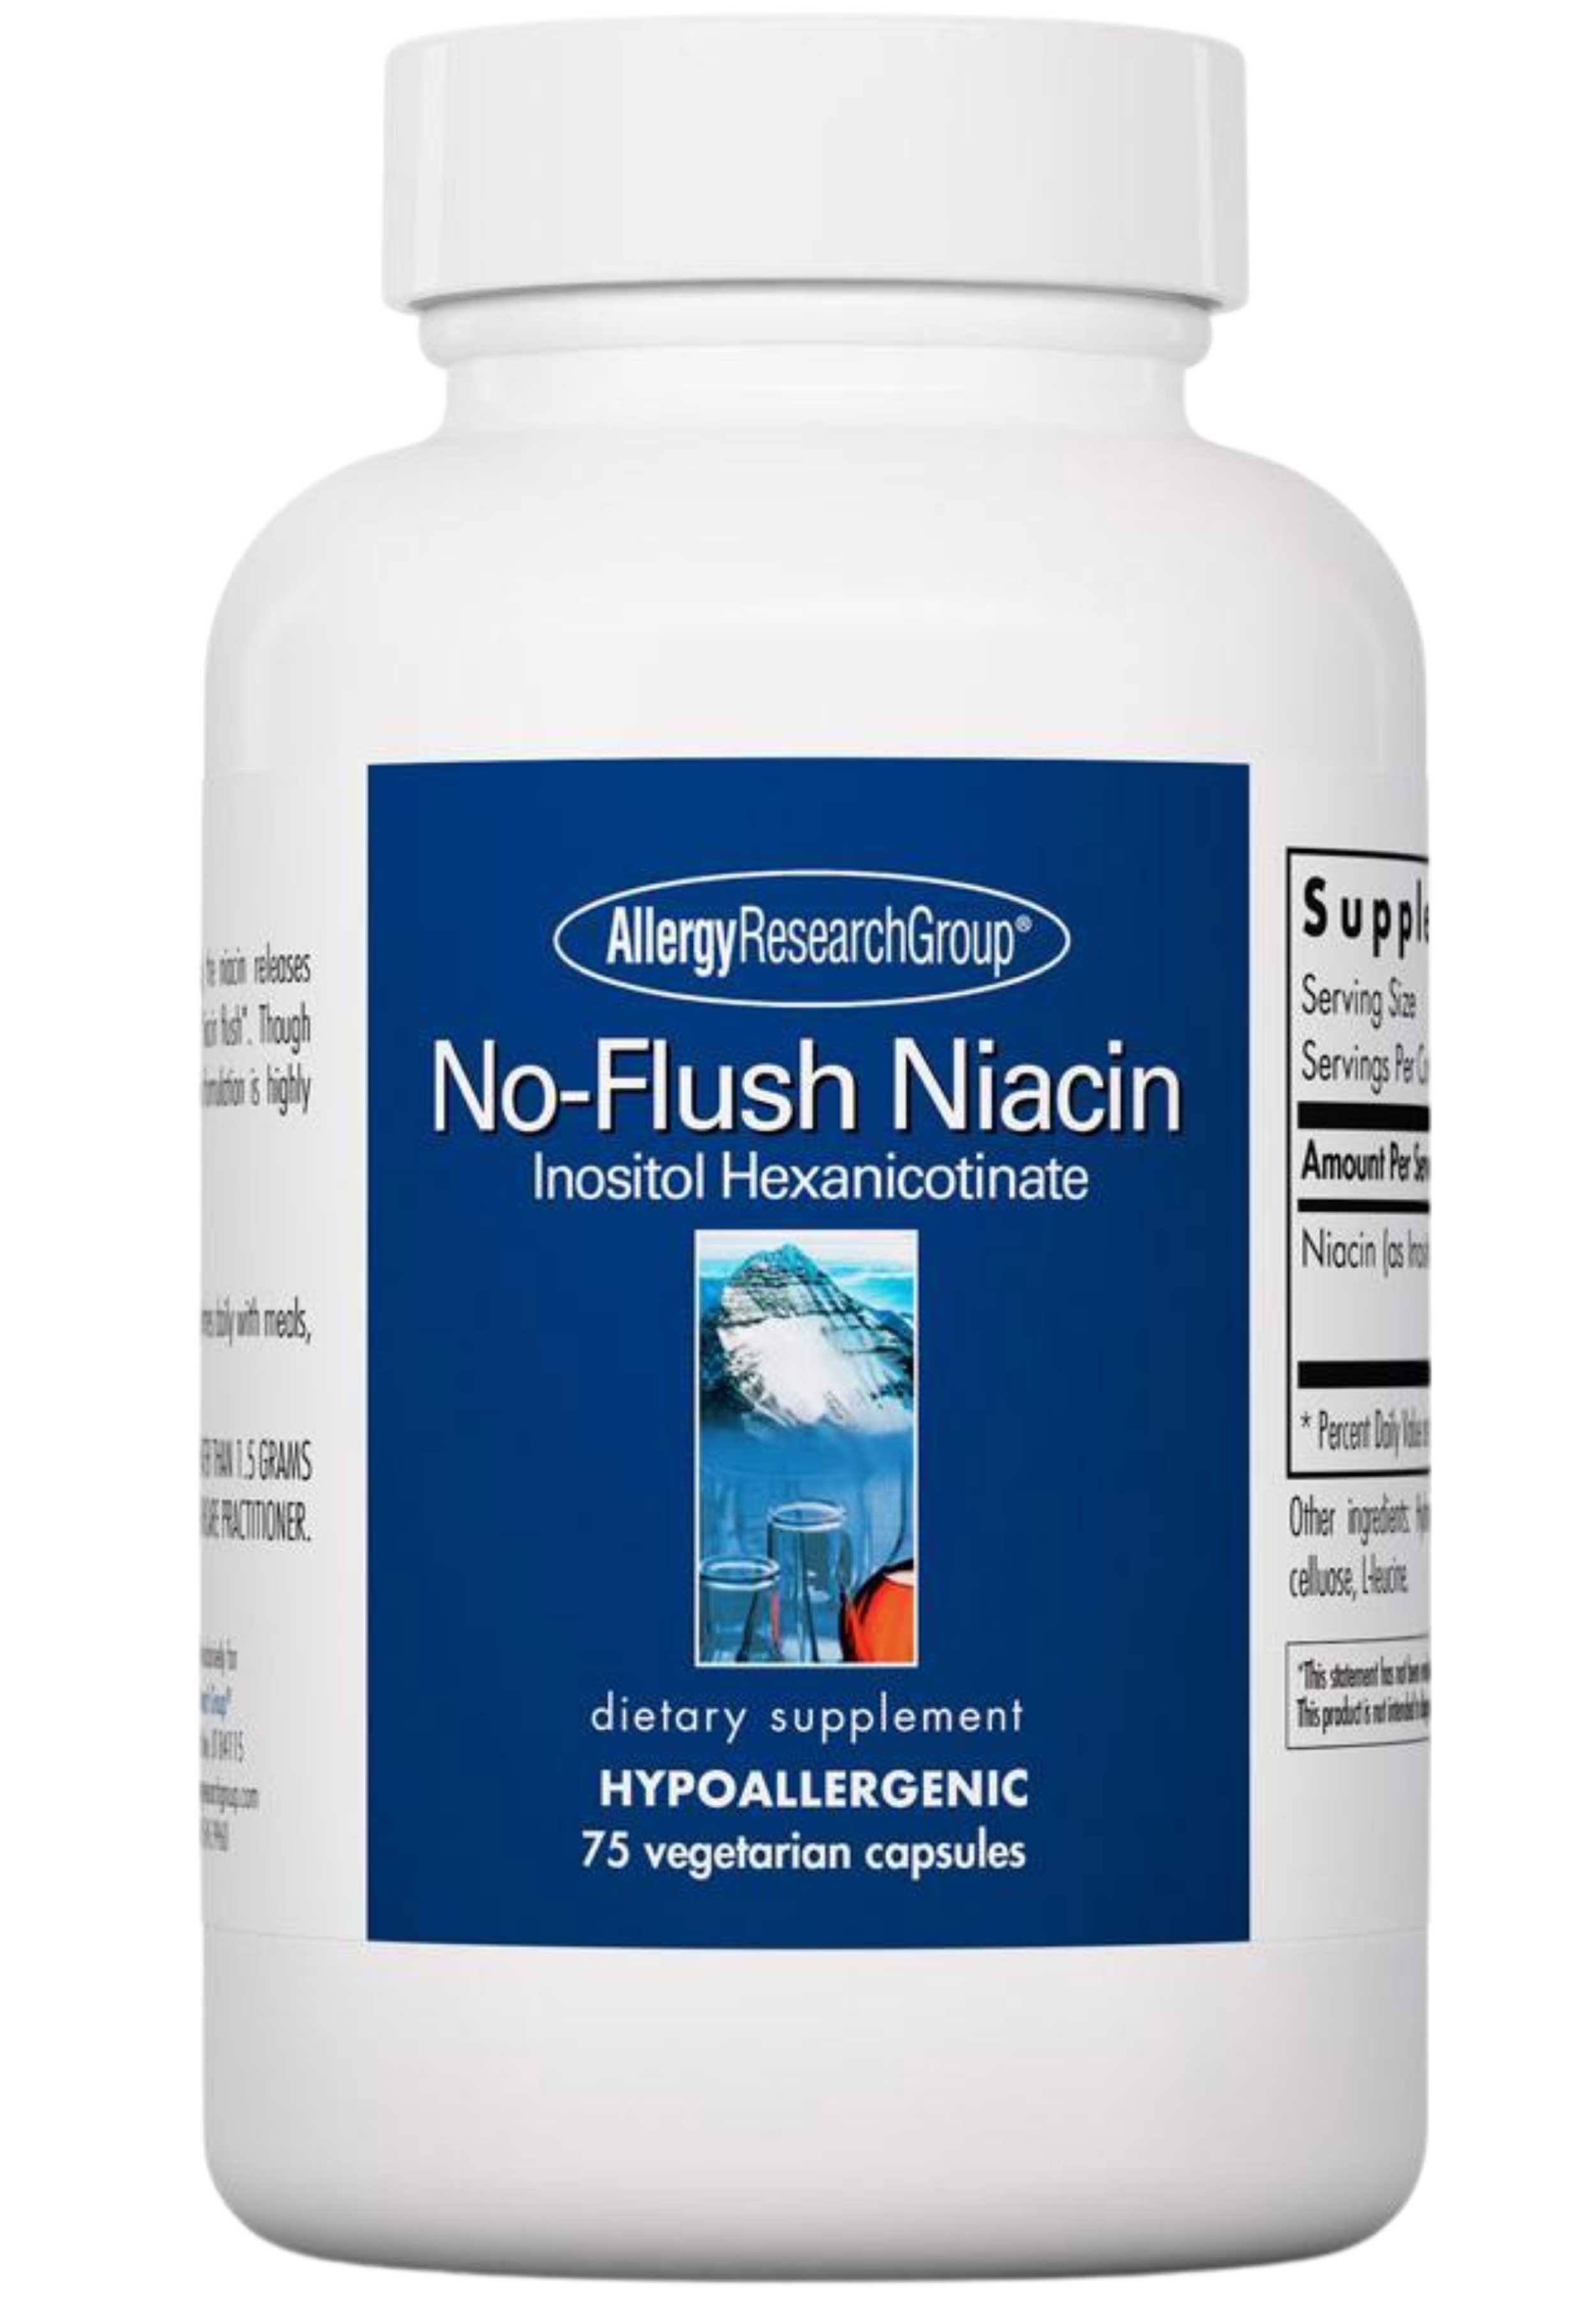 Allergy Research Group No-Flush Niacin